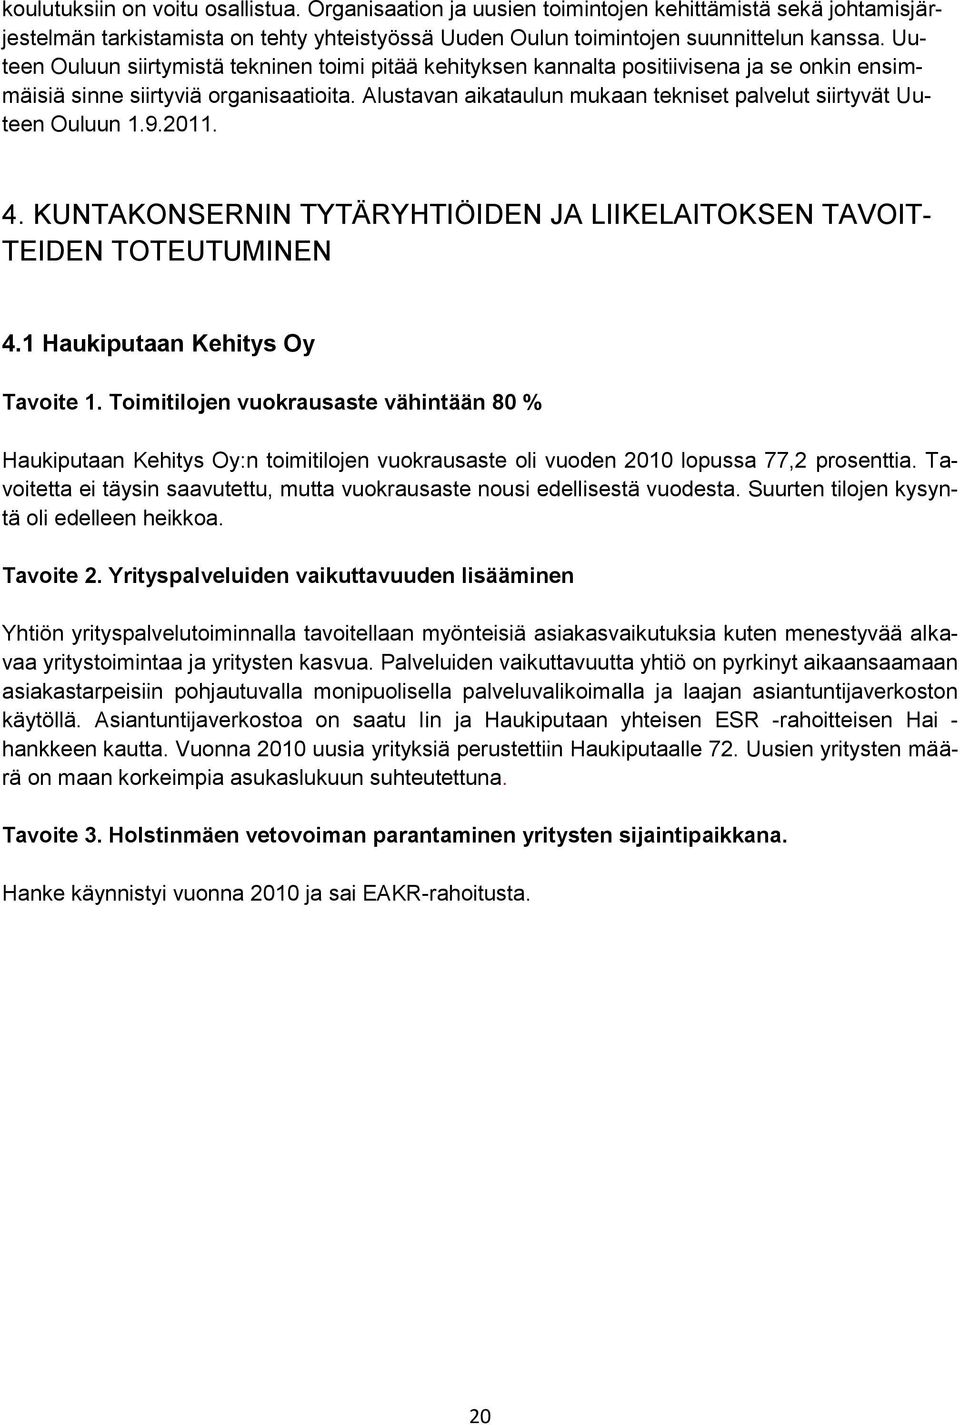 Alustavan aikataulun mukaan tekniset palvelut siirtyvät Uuteen Ouluun 1.9.2011. 4. KUNTAKONSERNIN TYTÄRYHTIÖIDEN JA LIIKELAITOKSEN TAVOIT- TEIDEN TOTEUTUMINEN 4.1 Haukiputaan Kehitys Oy Tavoite 1.